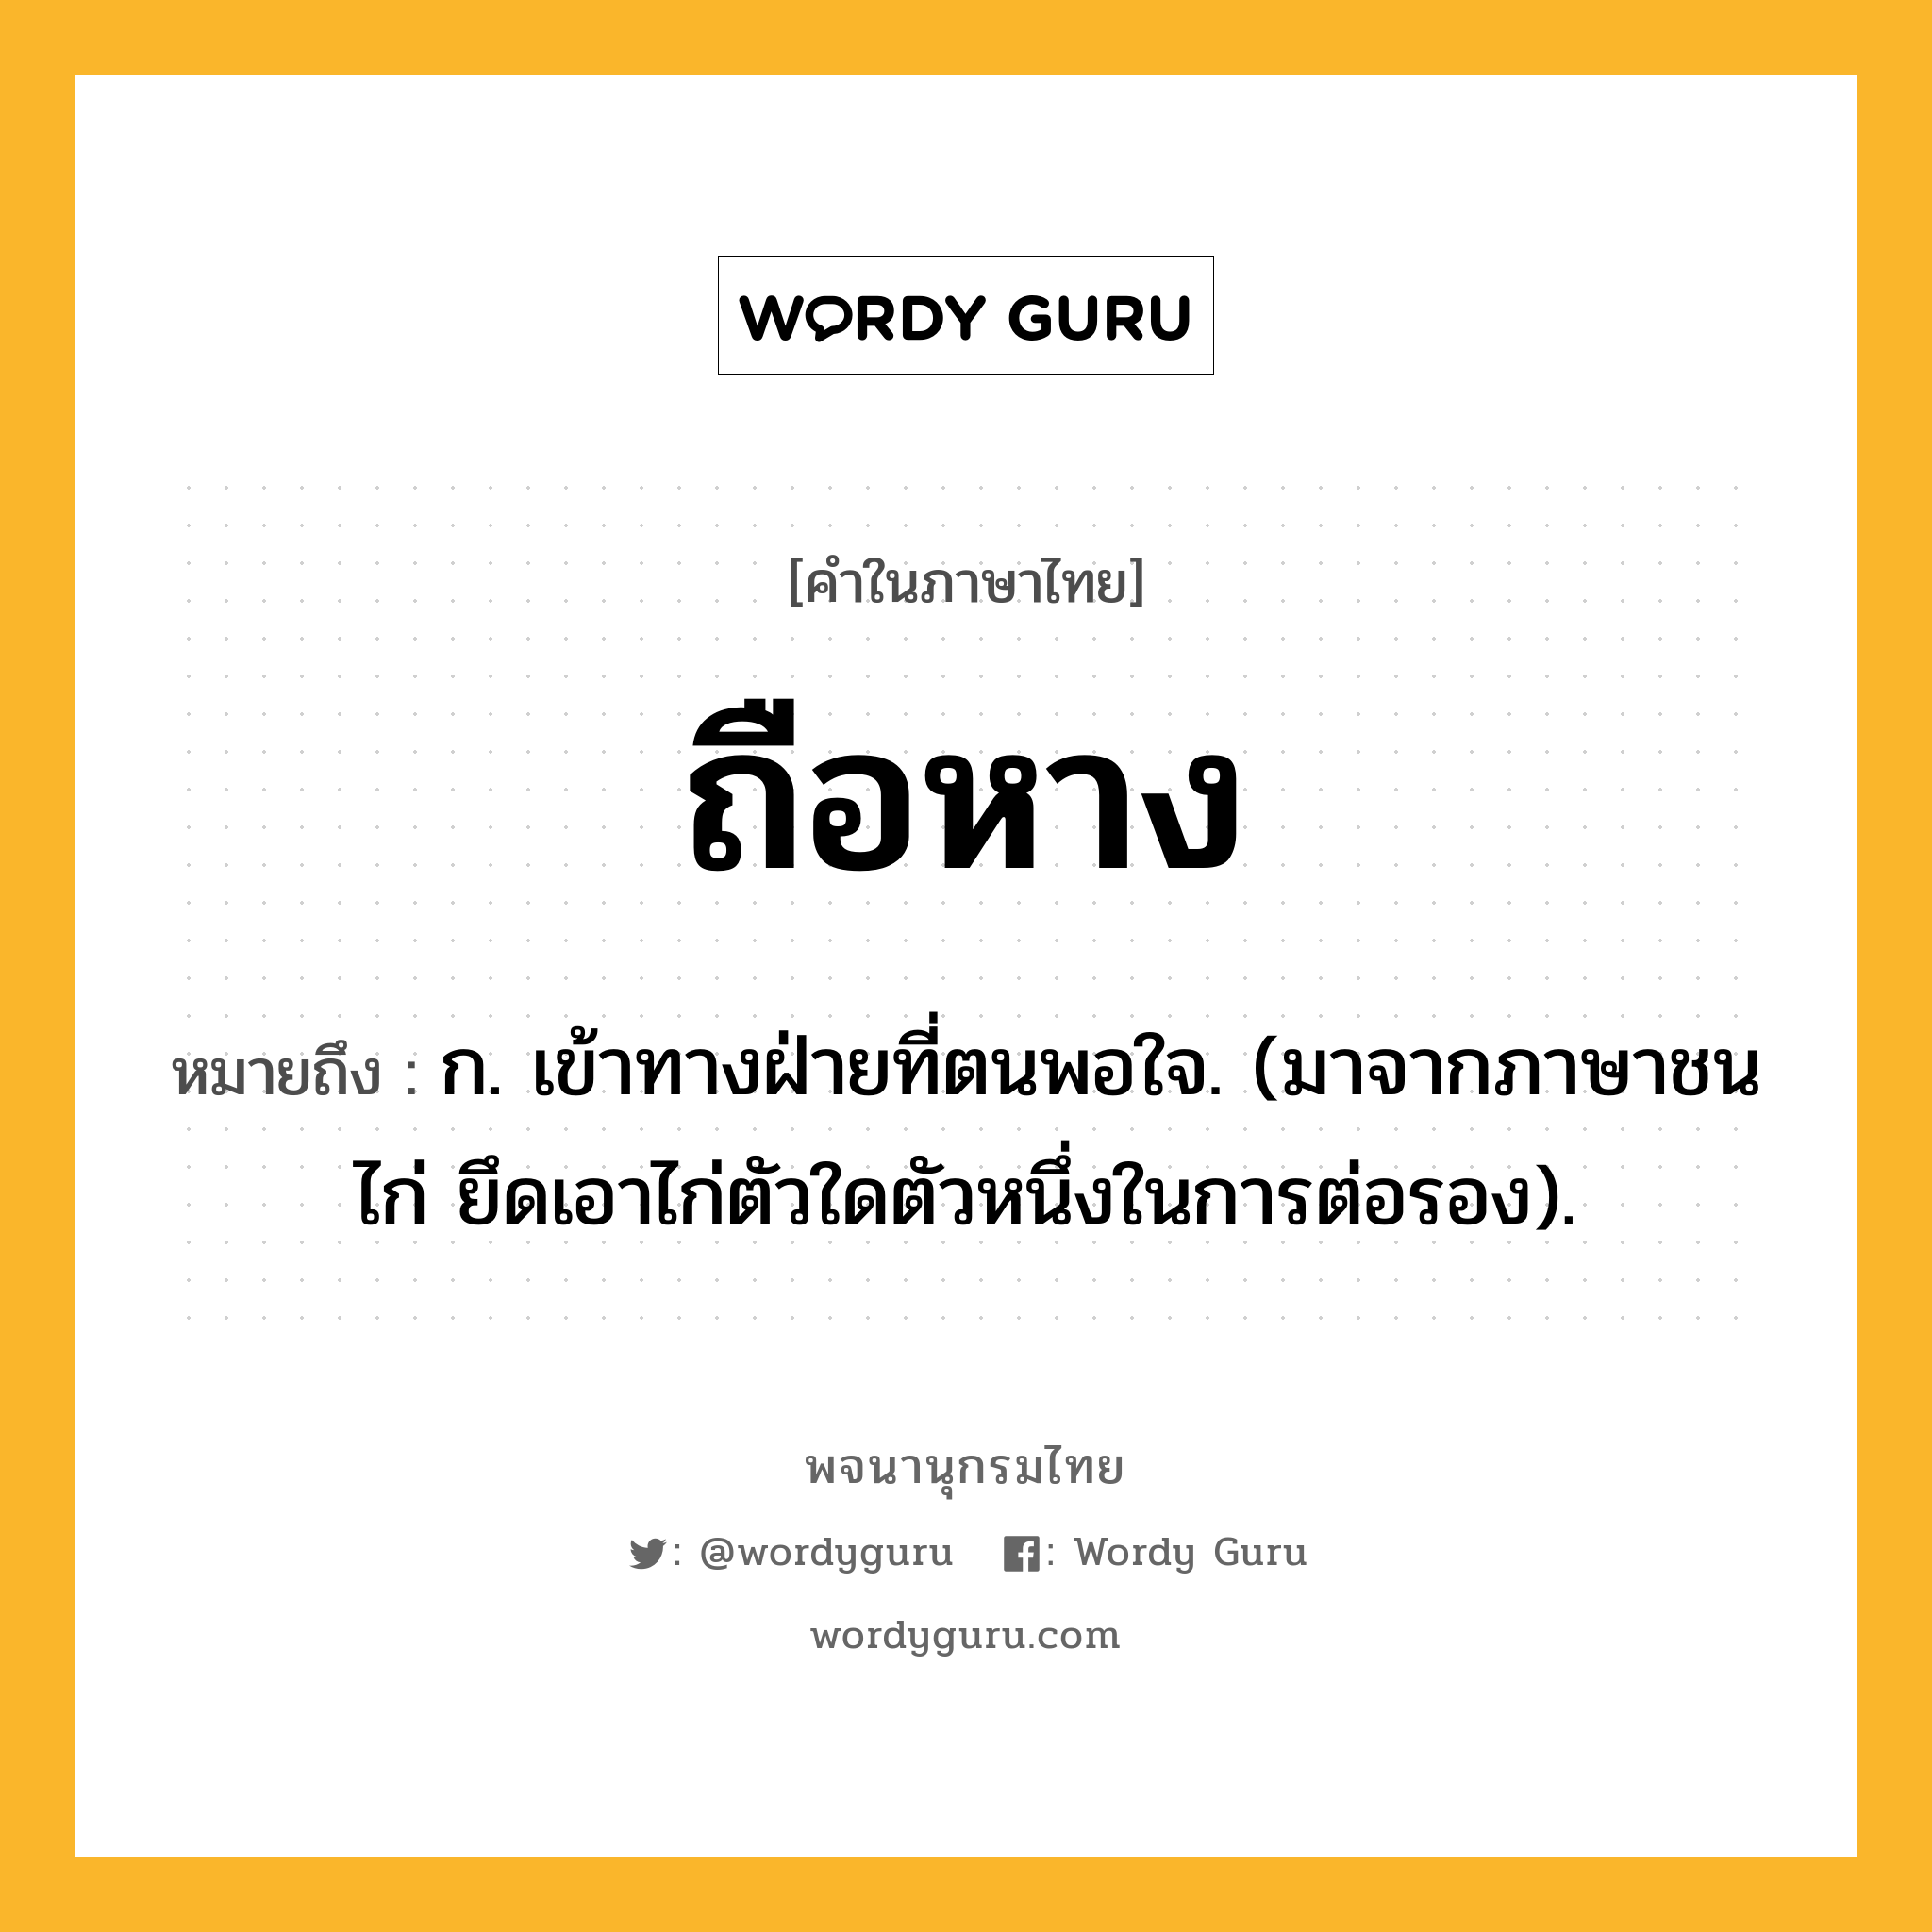 ถือหาง หมายถึงอะไร?, คำในภาษาไทย ถือหาง หมายถึง ก. เข้าทางฝ่ายที่ตนพอใจ. (มาจากภาษาชนไก่ ยึดเอาไก่ตัวใดตัวหนึ่งในการต่อรอง).